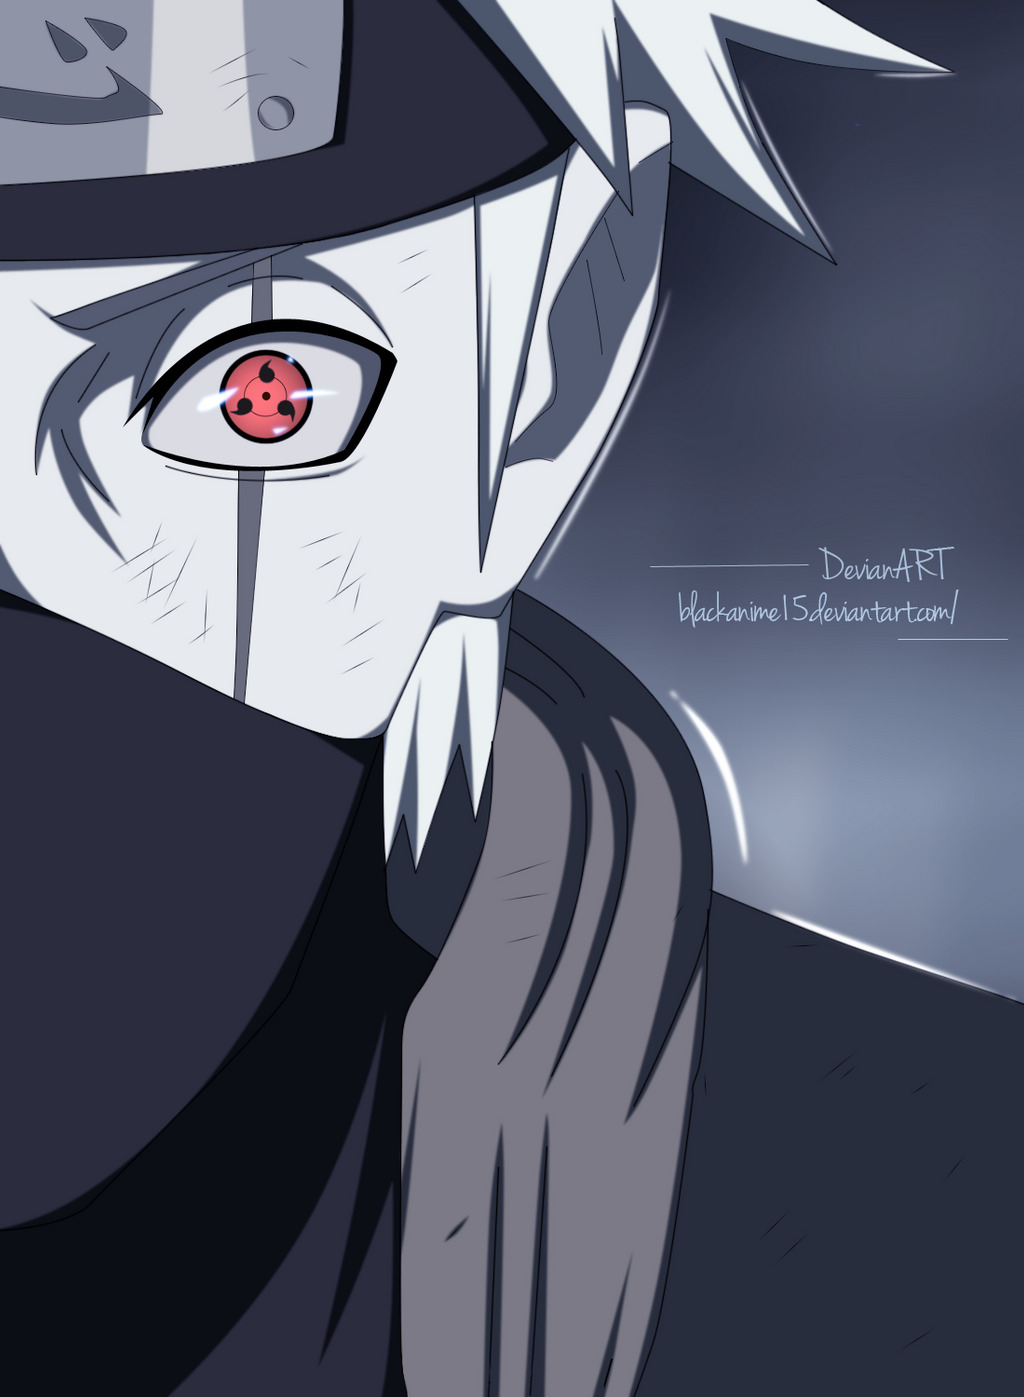 Kakashi Sharingan: Sự kết hợp hoàn hảo giữa sức mạnh và tài năng của Kakashi với đôi mắt Sharingan nổi tiếng đã tạo ra một hình ảnh cực kỳ đẹp mắt và ấn tượng. Những fan hâm mộ của Naruto không nên bỏ qua cơ hội ngắm nhìn hình ảnh về Kakashi Sharingan này!